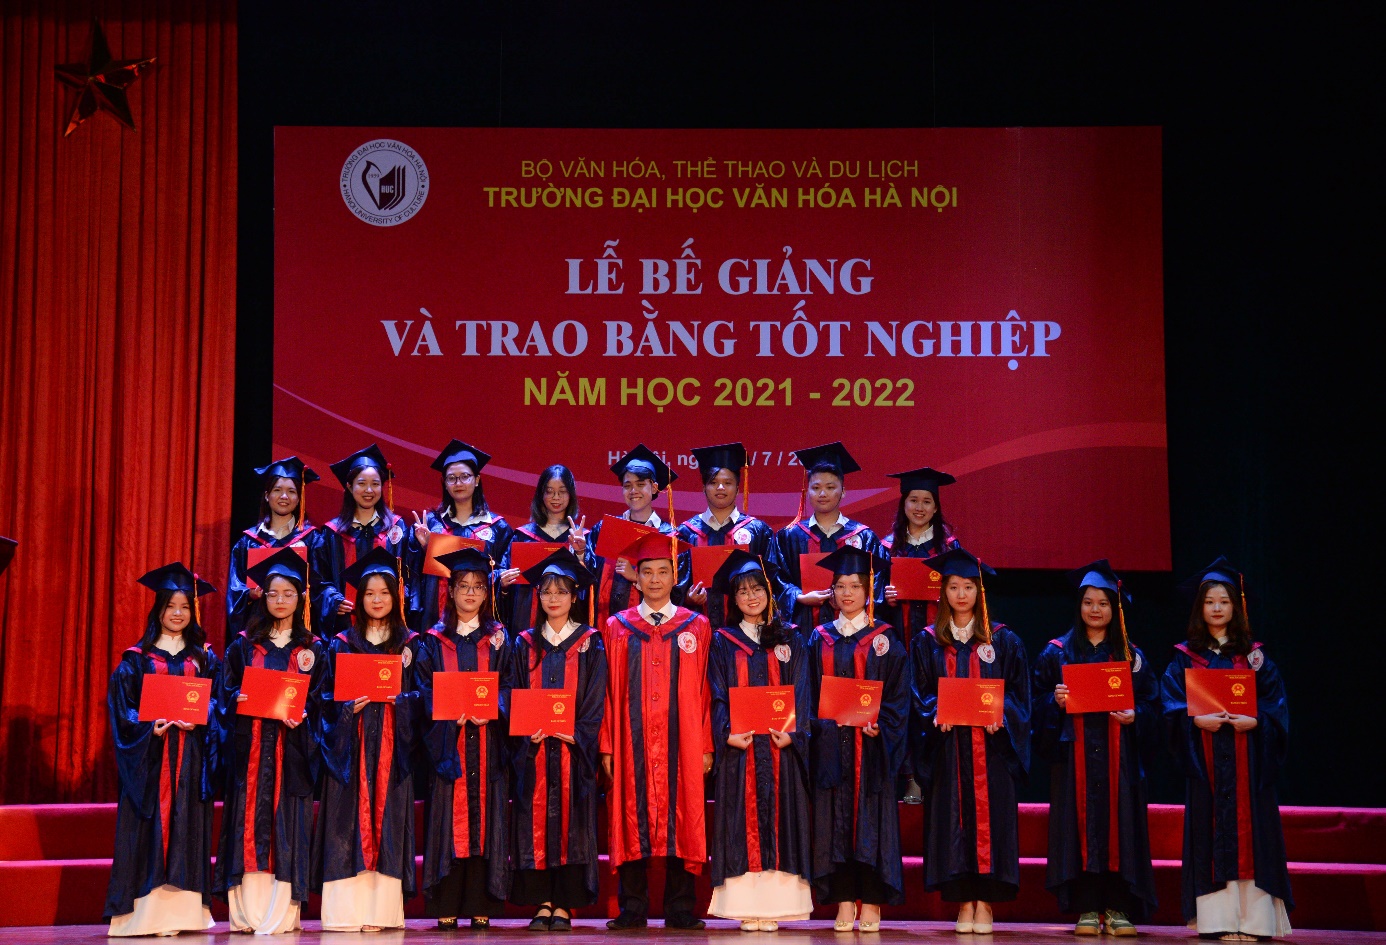 Trường Đại học Văn hóa Hà Nội tổ chức lễ bế giảng và trao bằng tốt nghiệp năm học 2021 – 2022 - Ảnh 2.